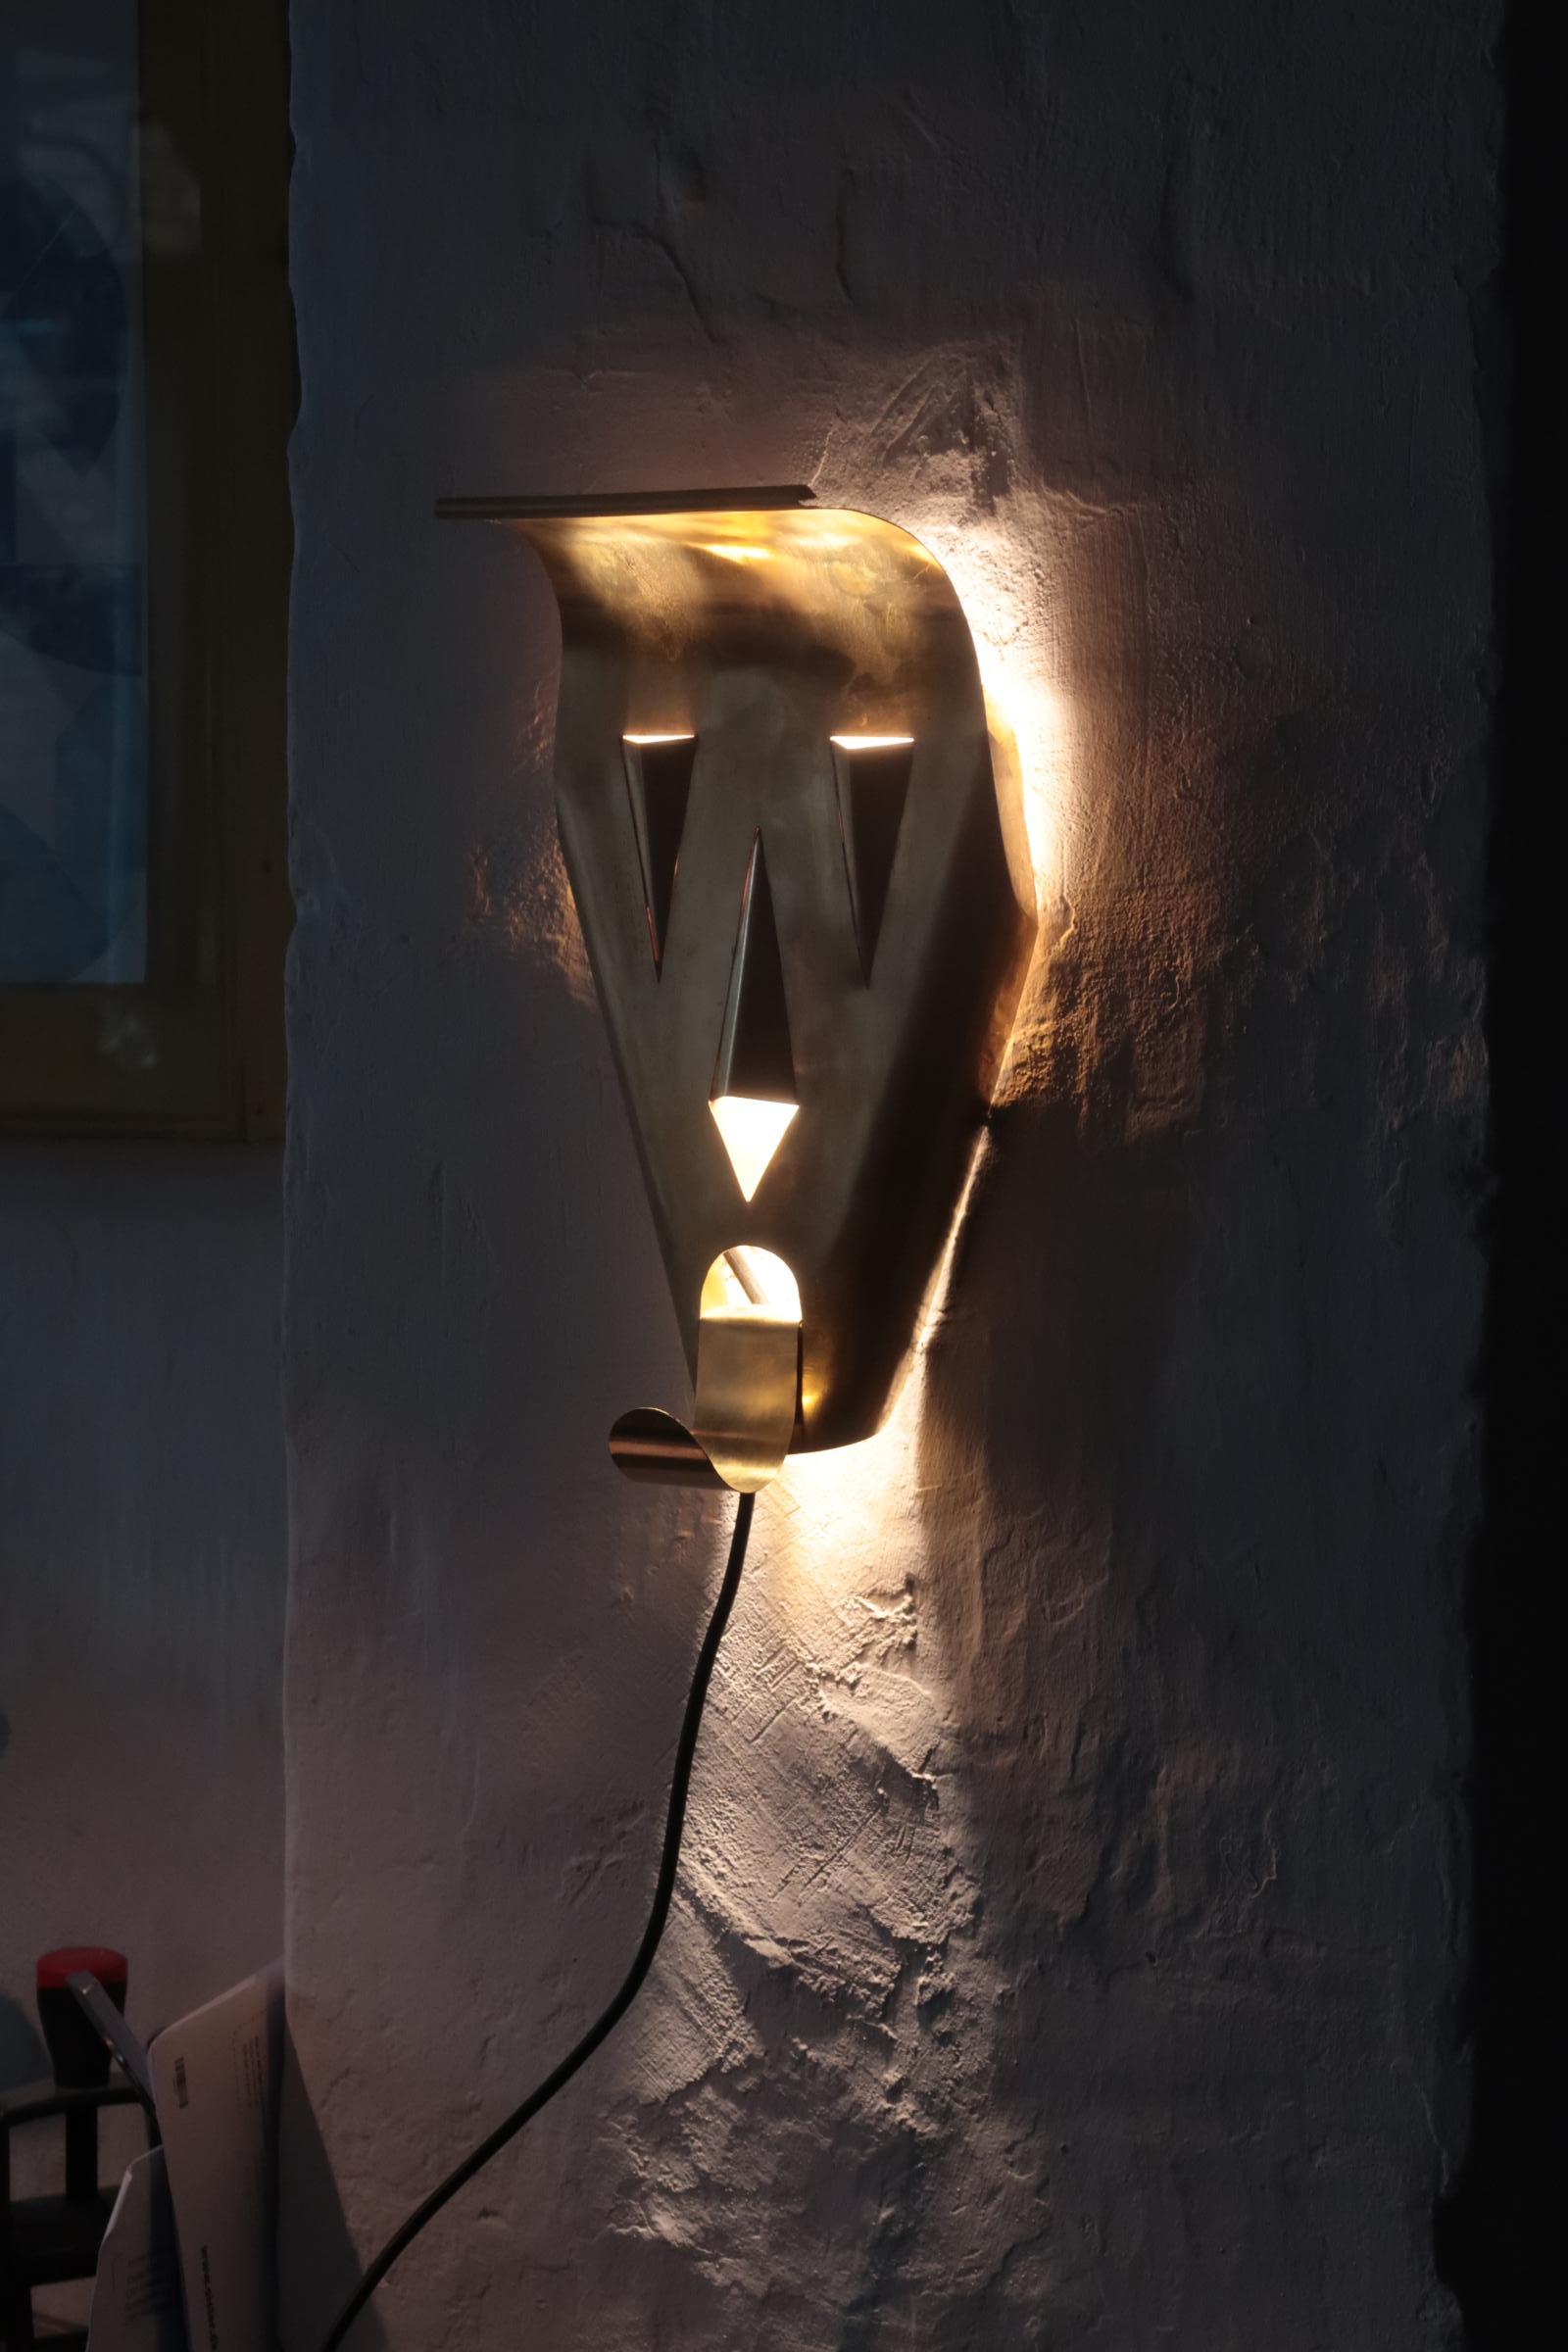 Hand made lamp sculpture by Danish artist FOS